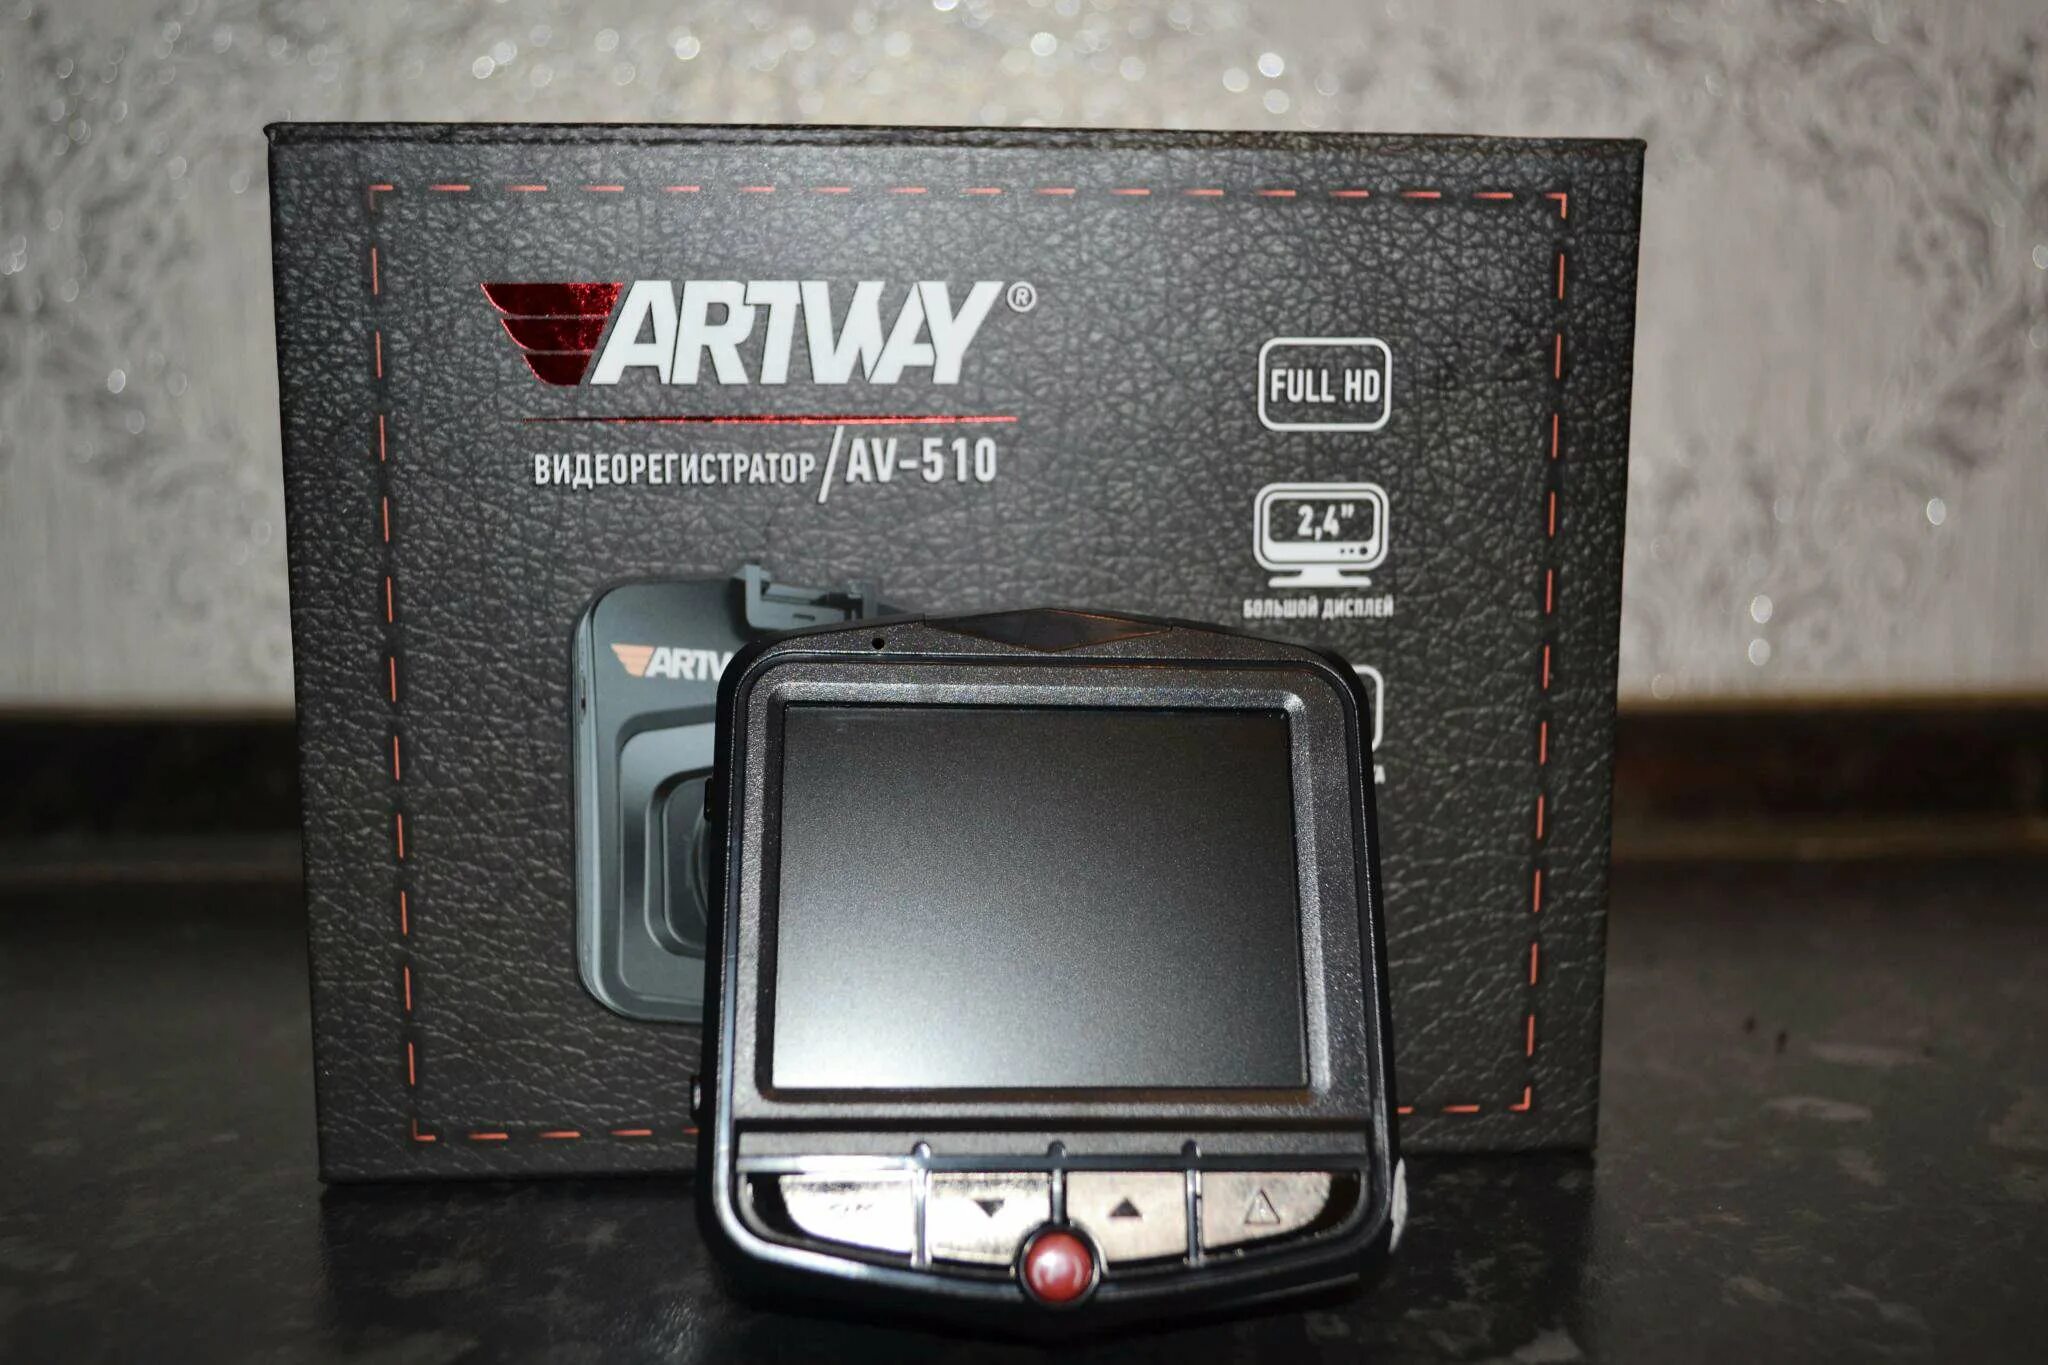 Av 510. Artway видеорегистратор 510. Видеорегистратор Artway av-510 Artway. Видеорегистратор Artway av-510 (с картой памяти на 64 ГБ В комплекте).